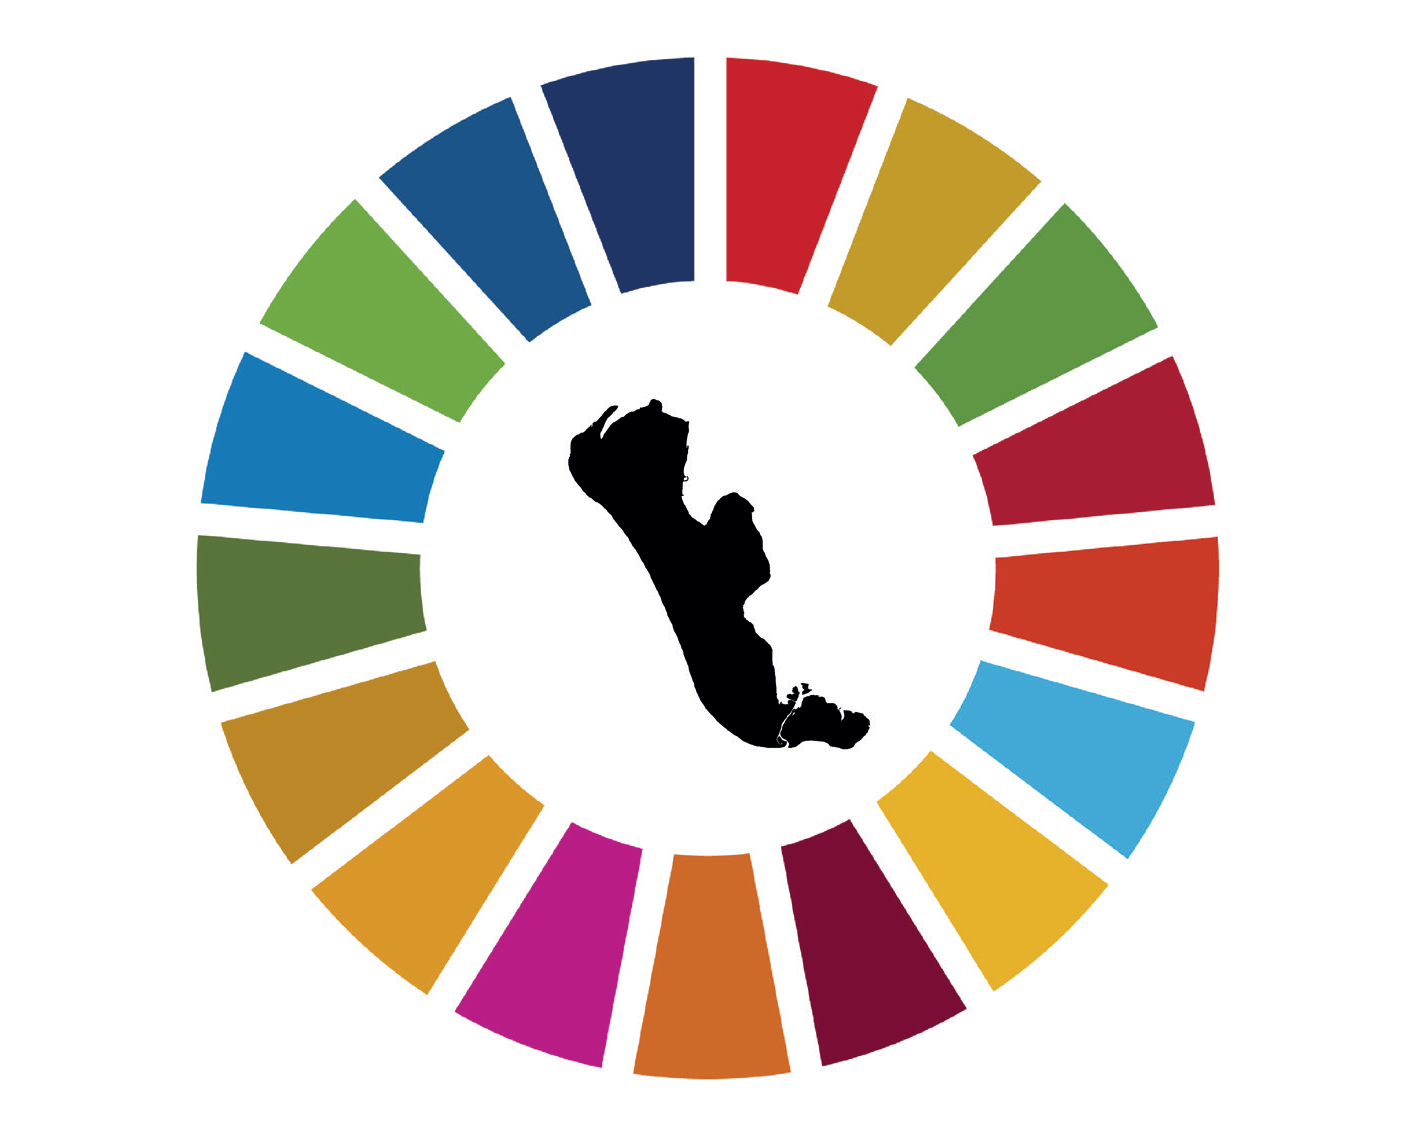 FN Verdenshjul